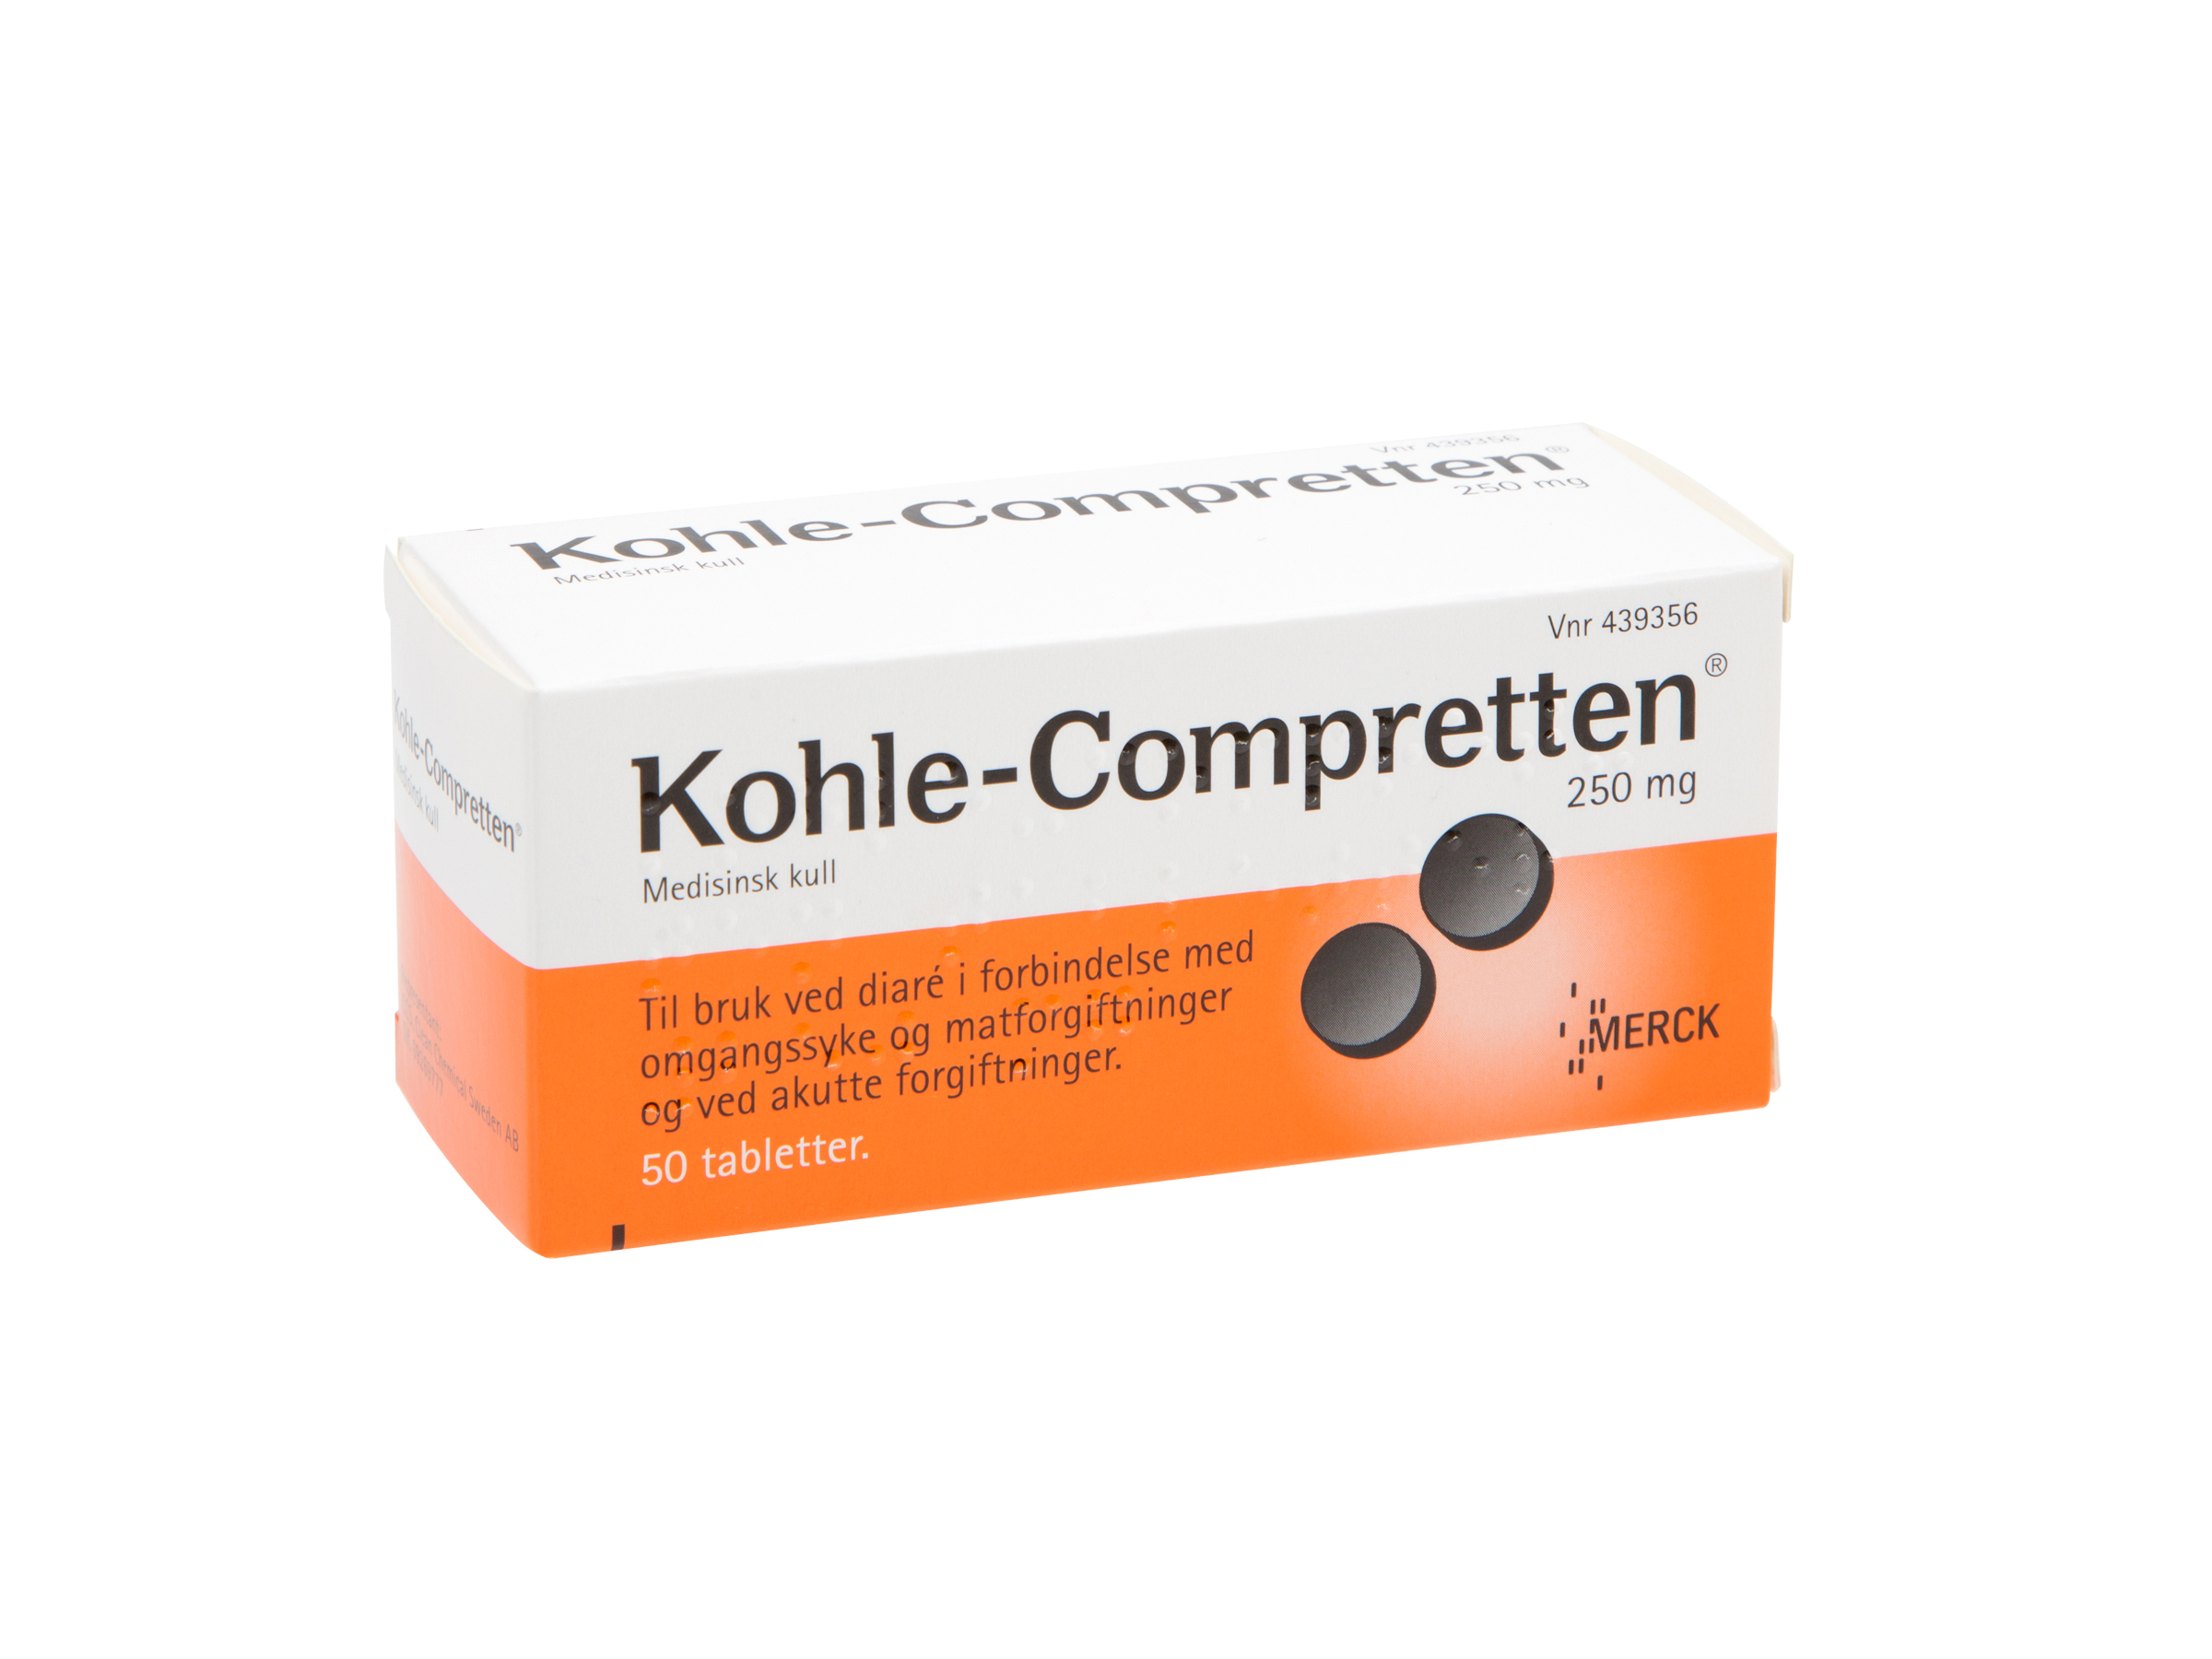 Kohle-Compretten Tabletter 250mg, 50 stk. på brett